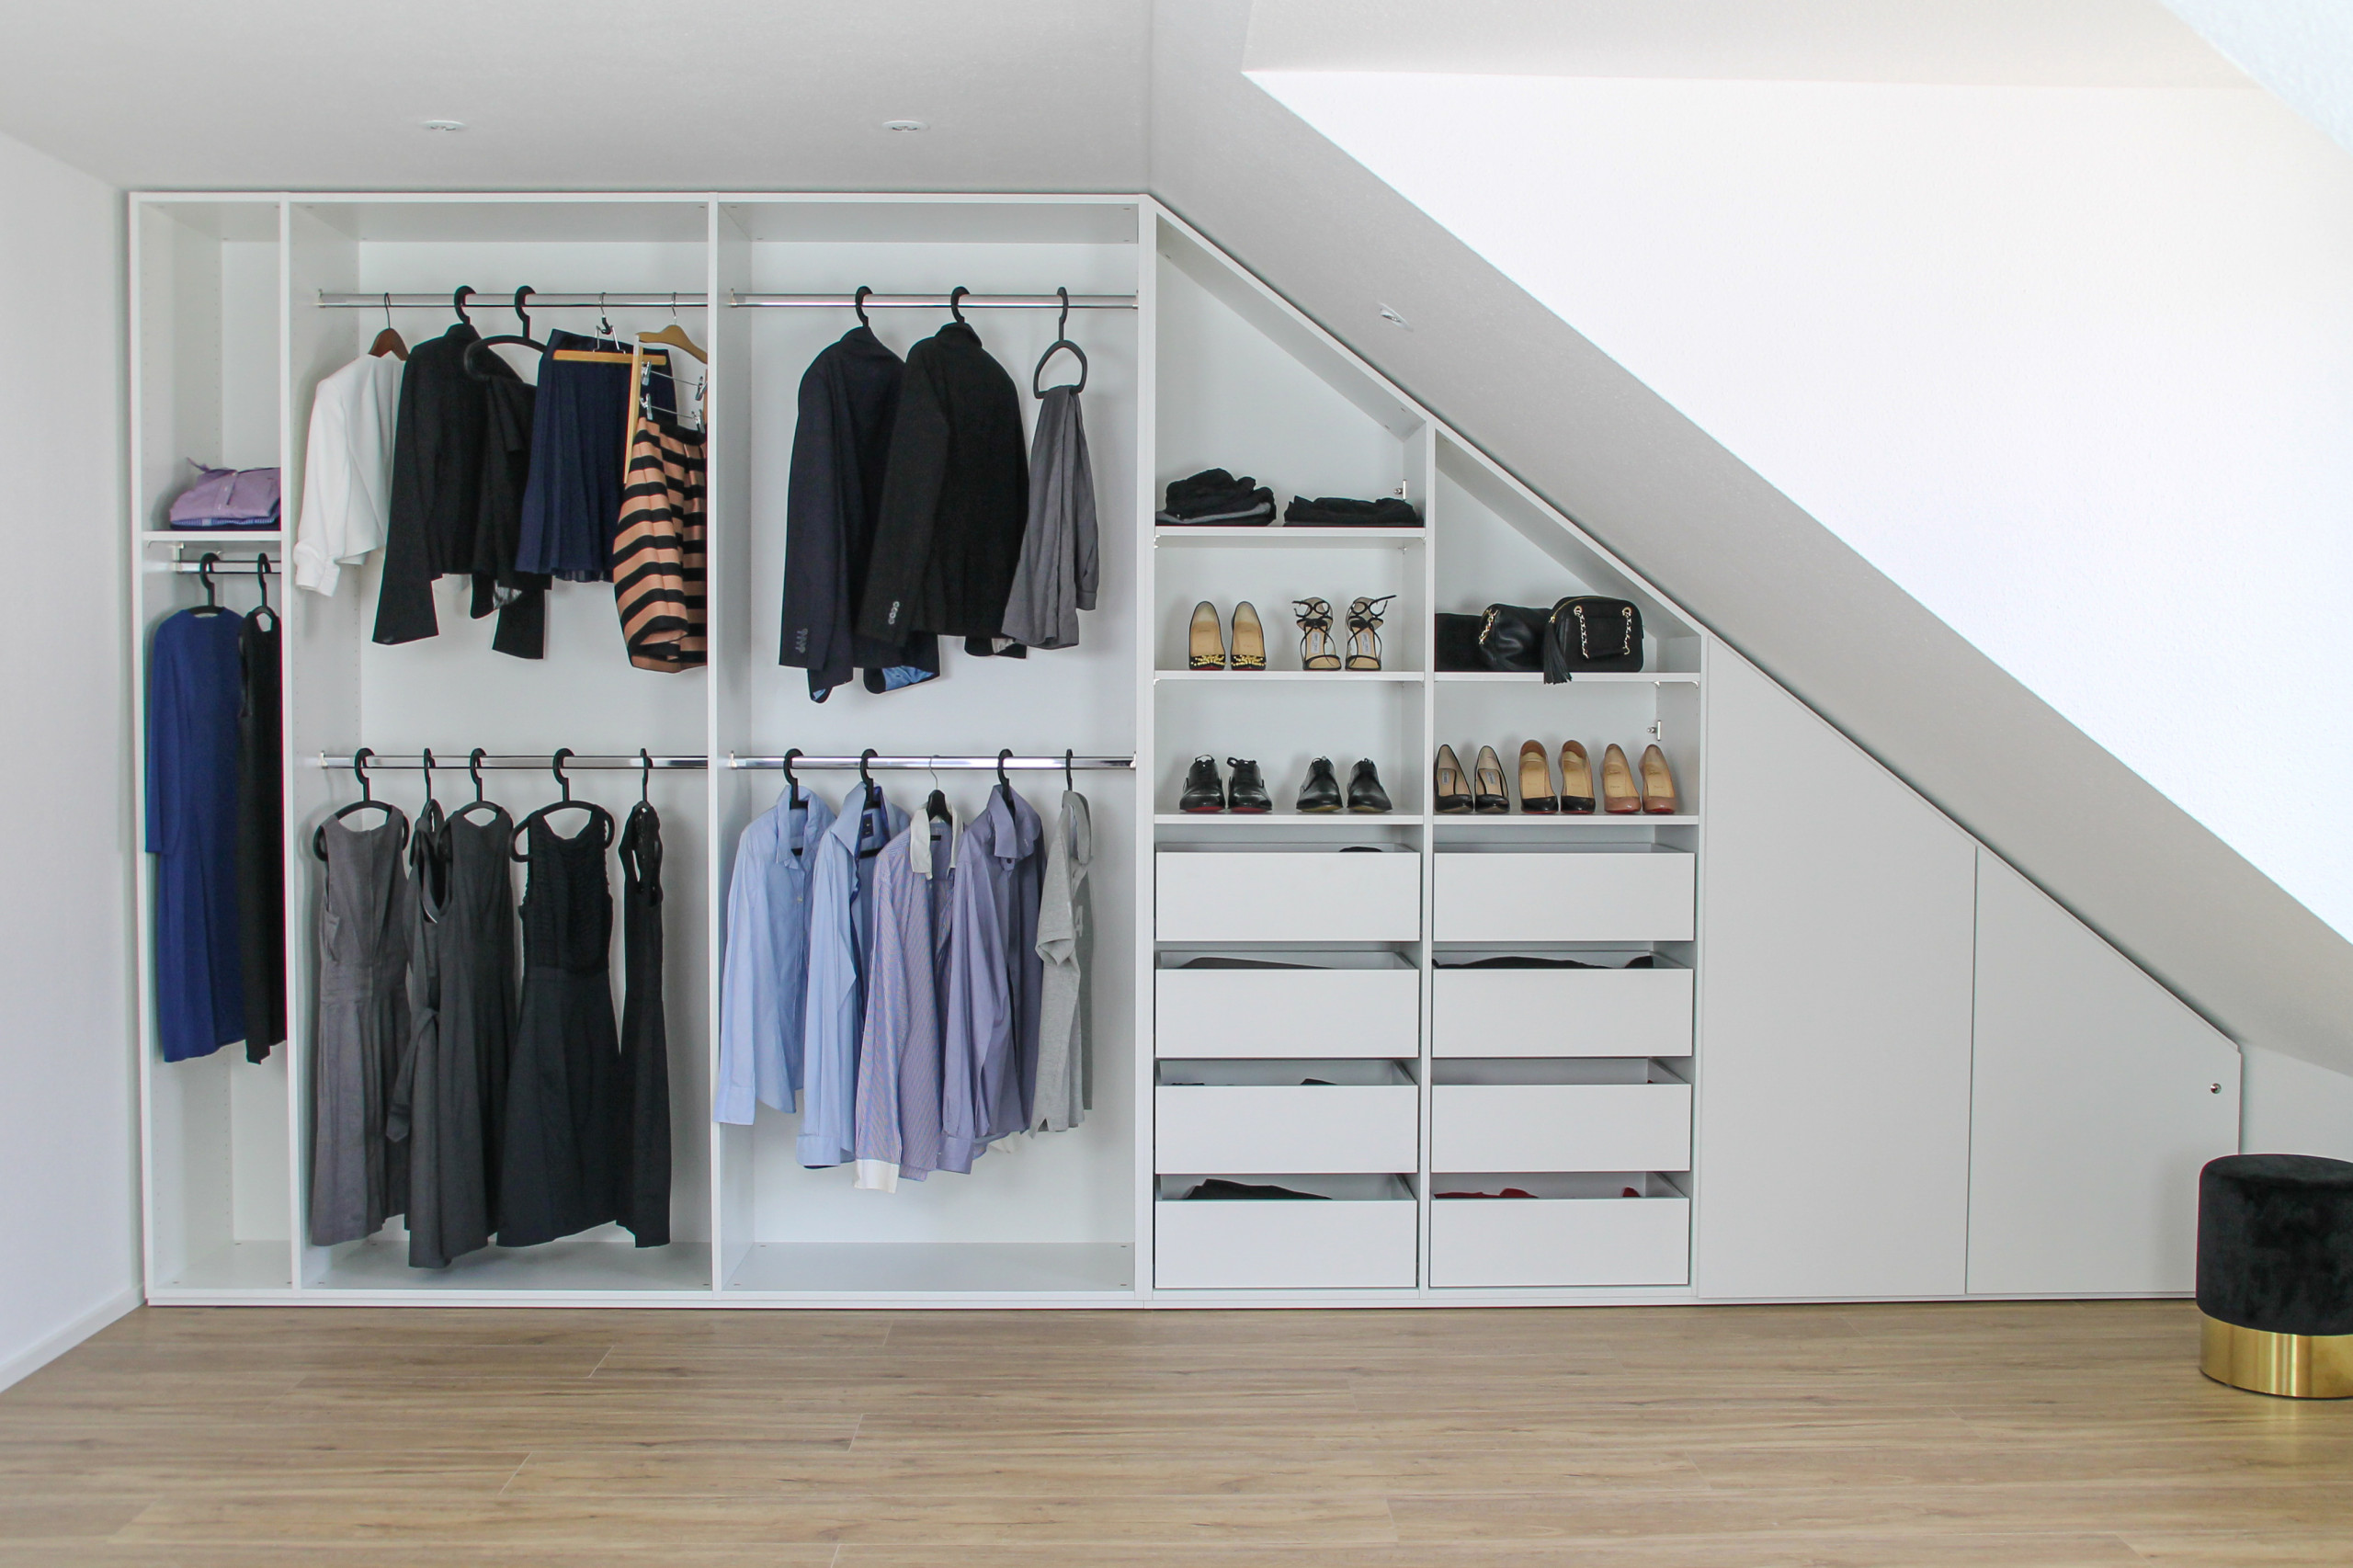 Begehbarer Kleiderschrank unter der Dachschräge - Contemporary - Closet -  by meine möbelmanufaktur GmbH | Houzz